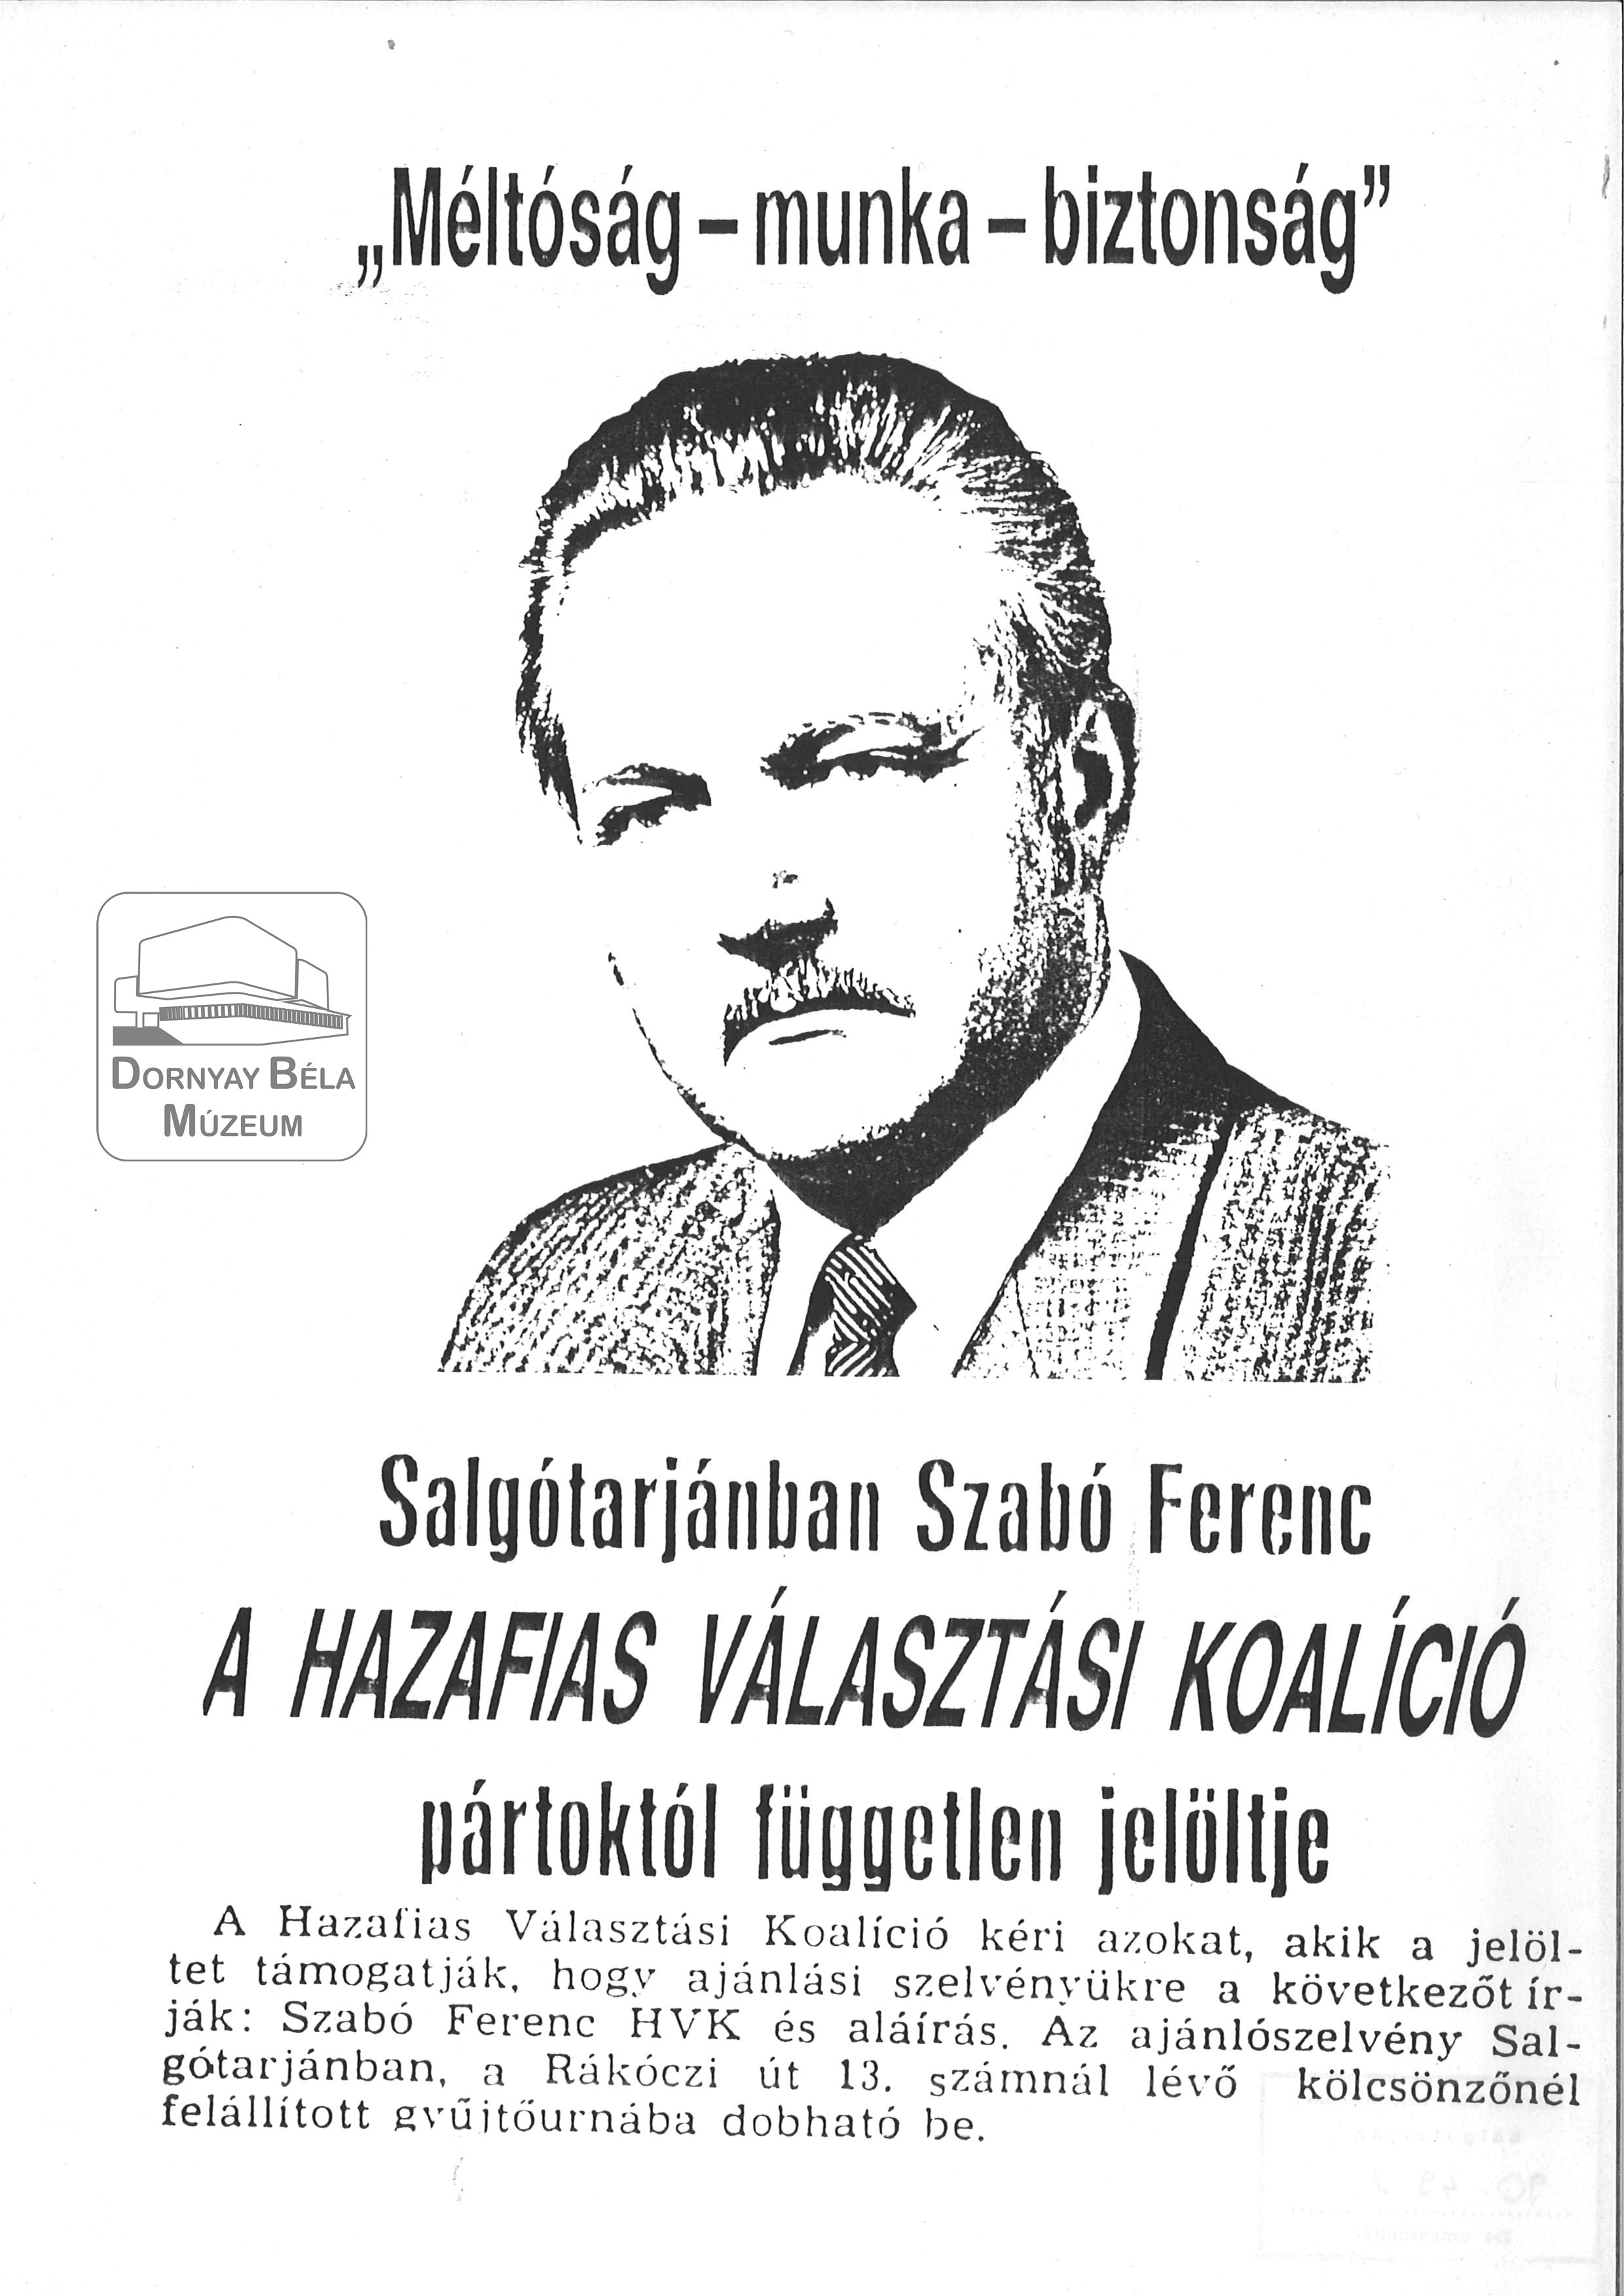 Salgótarjánban Szabó Ferenc a HVK jelöltje (Dornyay Béla Múzeum, Salgótarján CC BY-NC-SA)